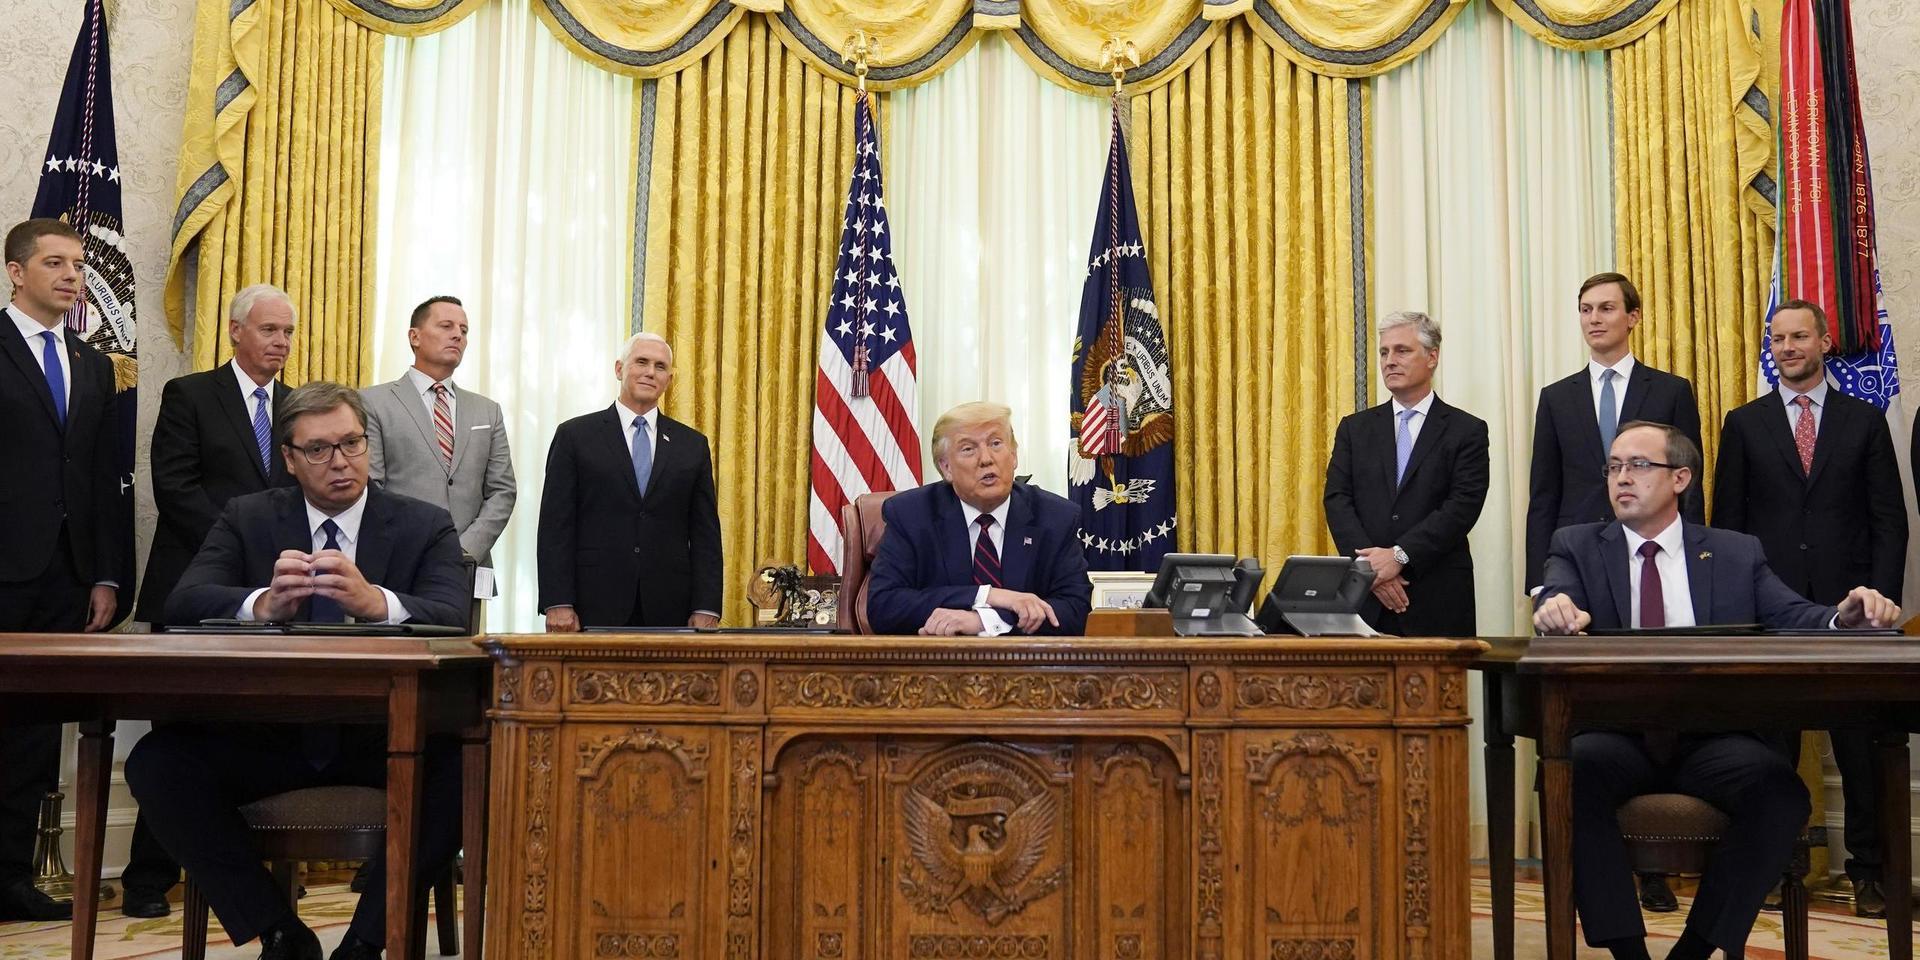 USA:s president Donald Trump (mitten) tillsammans med Serbiens president Aleksandar Vucić (vänster) och Kosovos premiärminister Avdullah Hoti (höger) i presidentens kontor Ovala rummet i Vita huset.